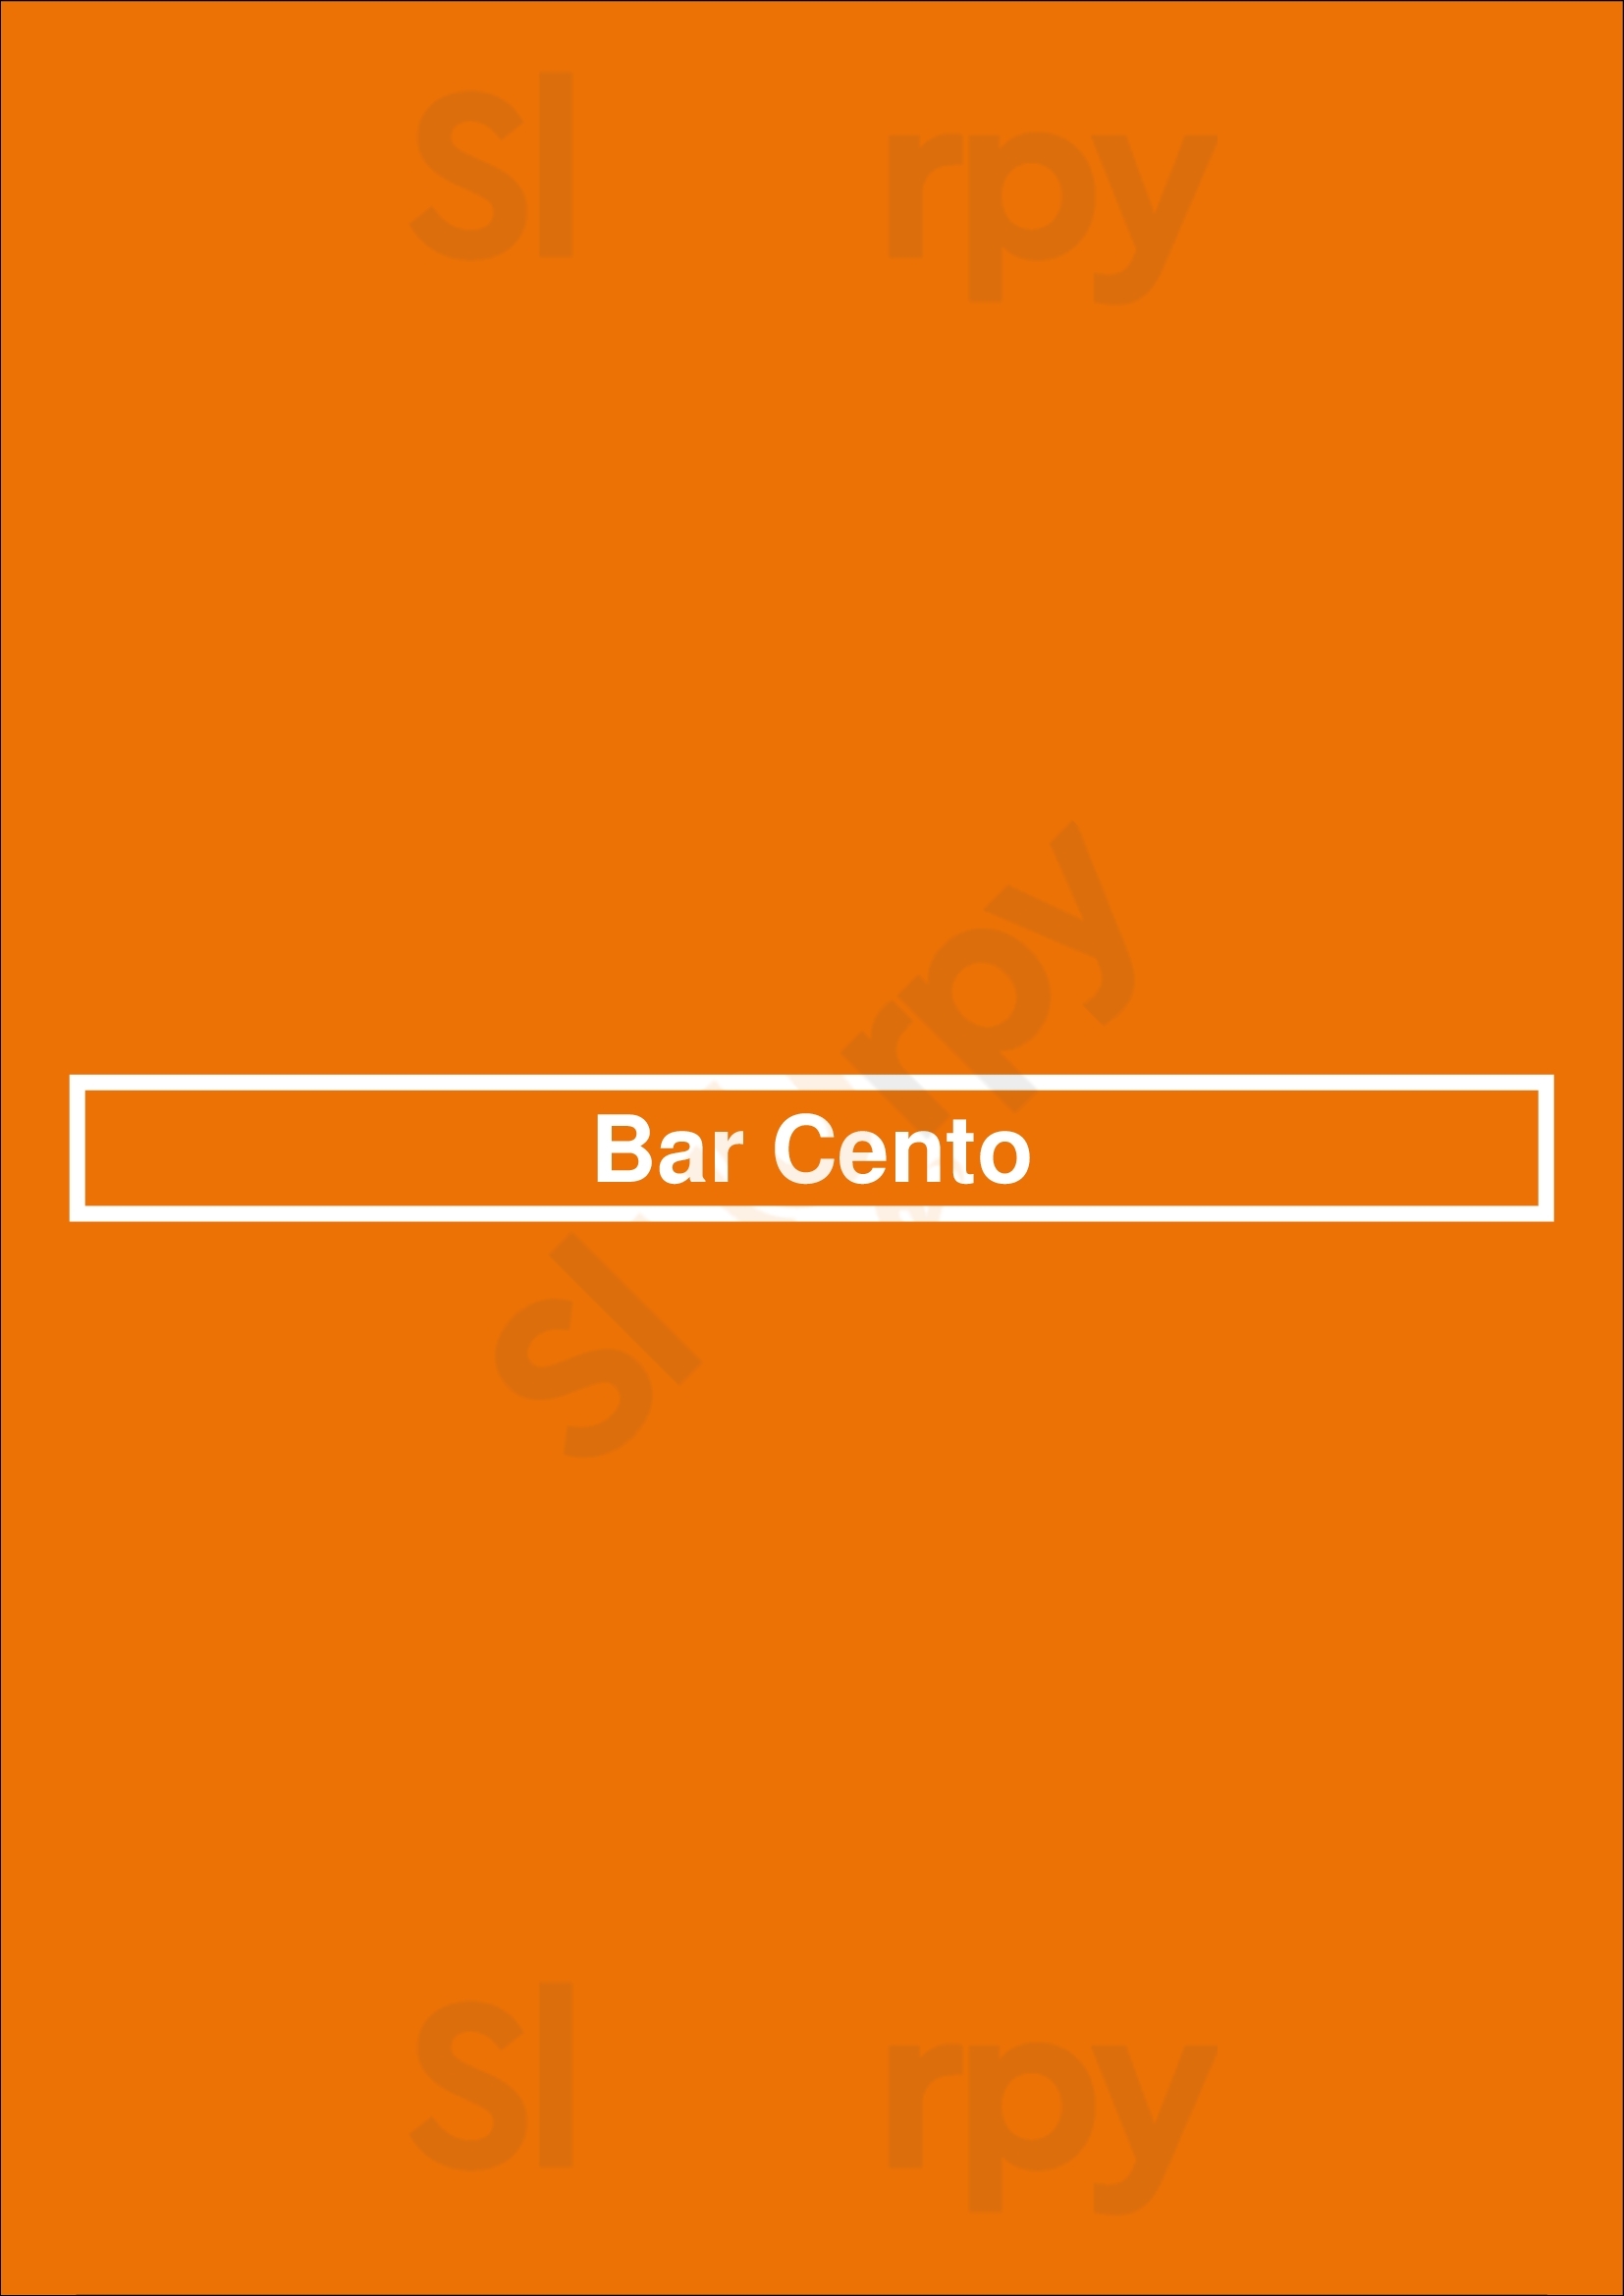 Bar Cento Cleveland Menu - 1